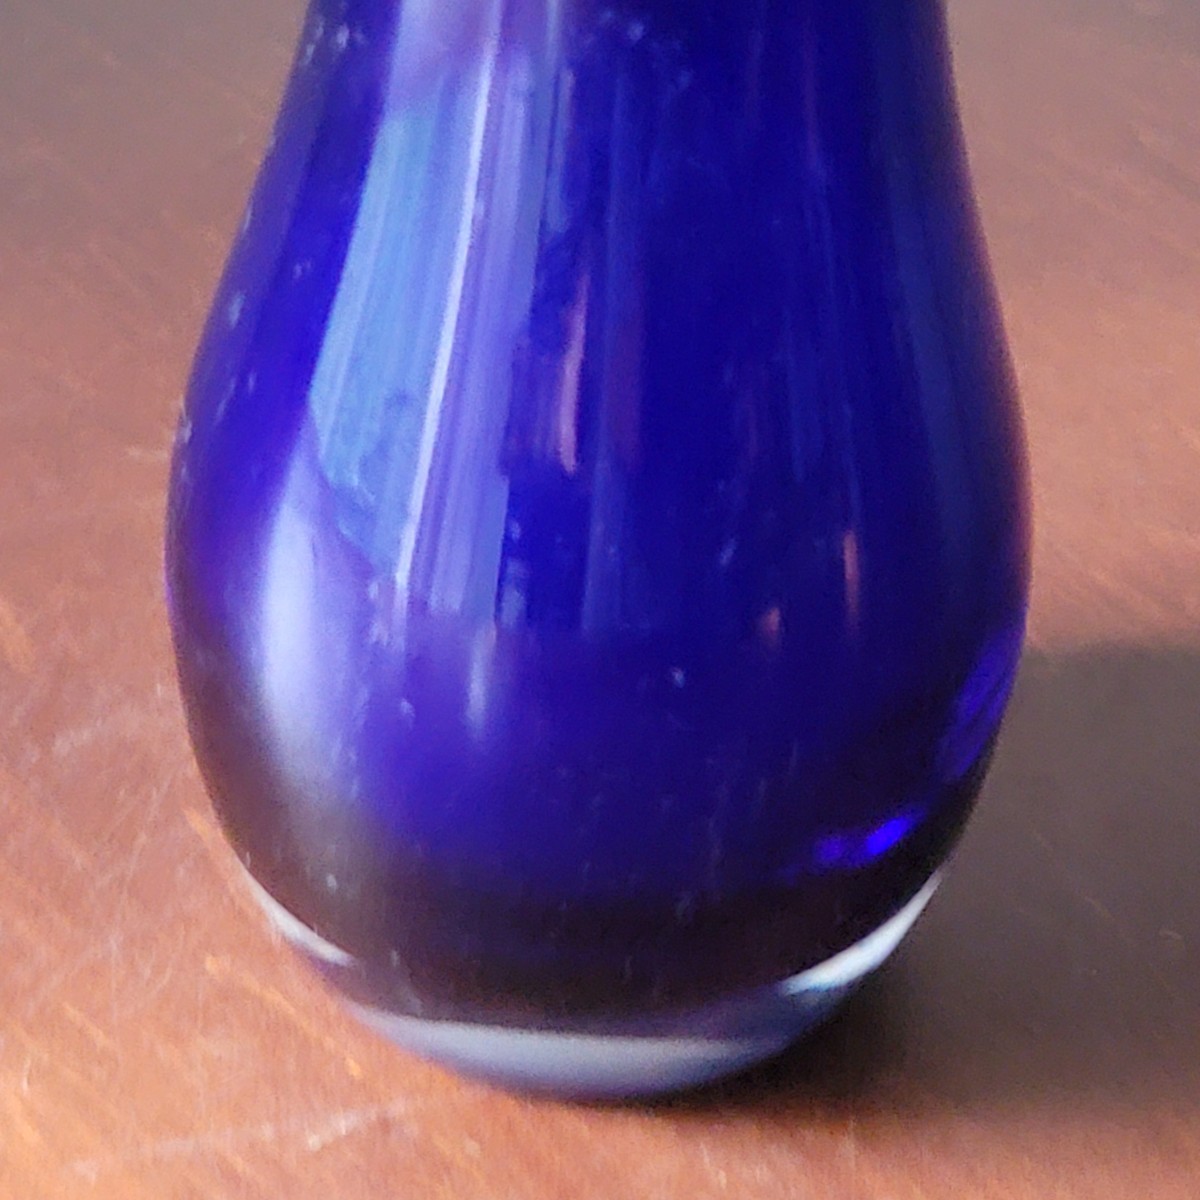 Japanese Vintage Flower Vase 硝子 コバルトブルー モダン 北欧 ミッドセンチュリー ヴィンテージ デザイン フラワーベース 花瓶 花器_画像6